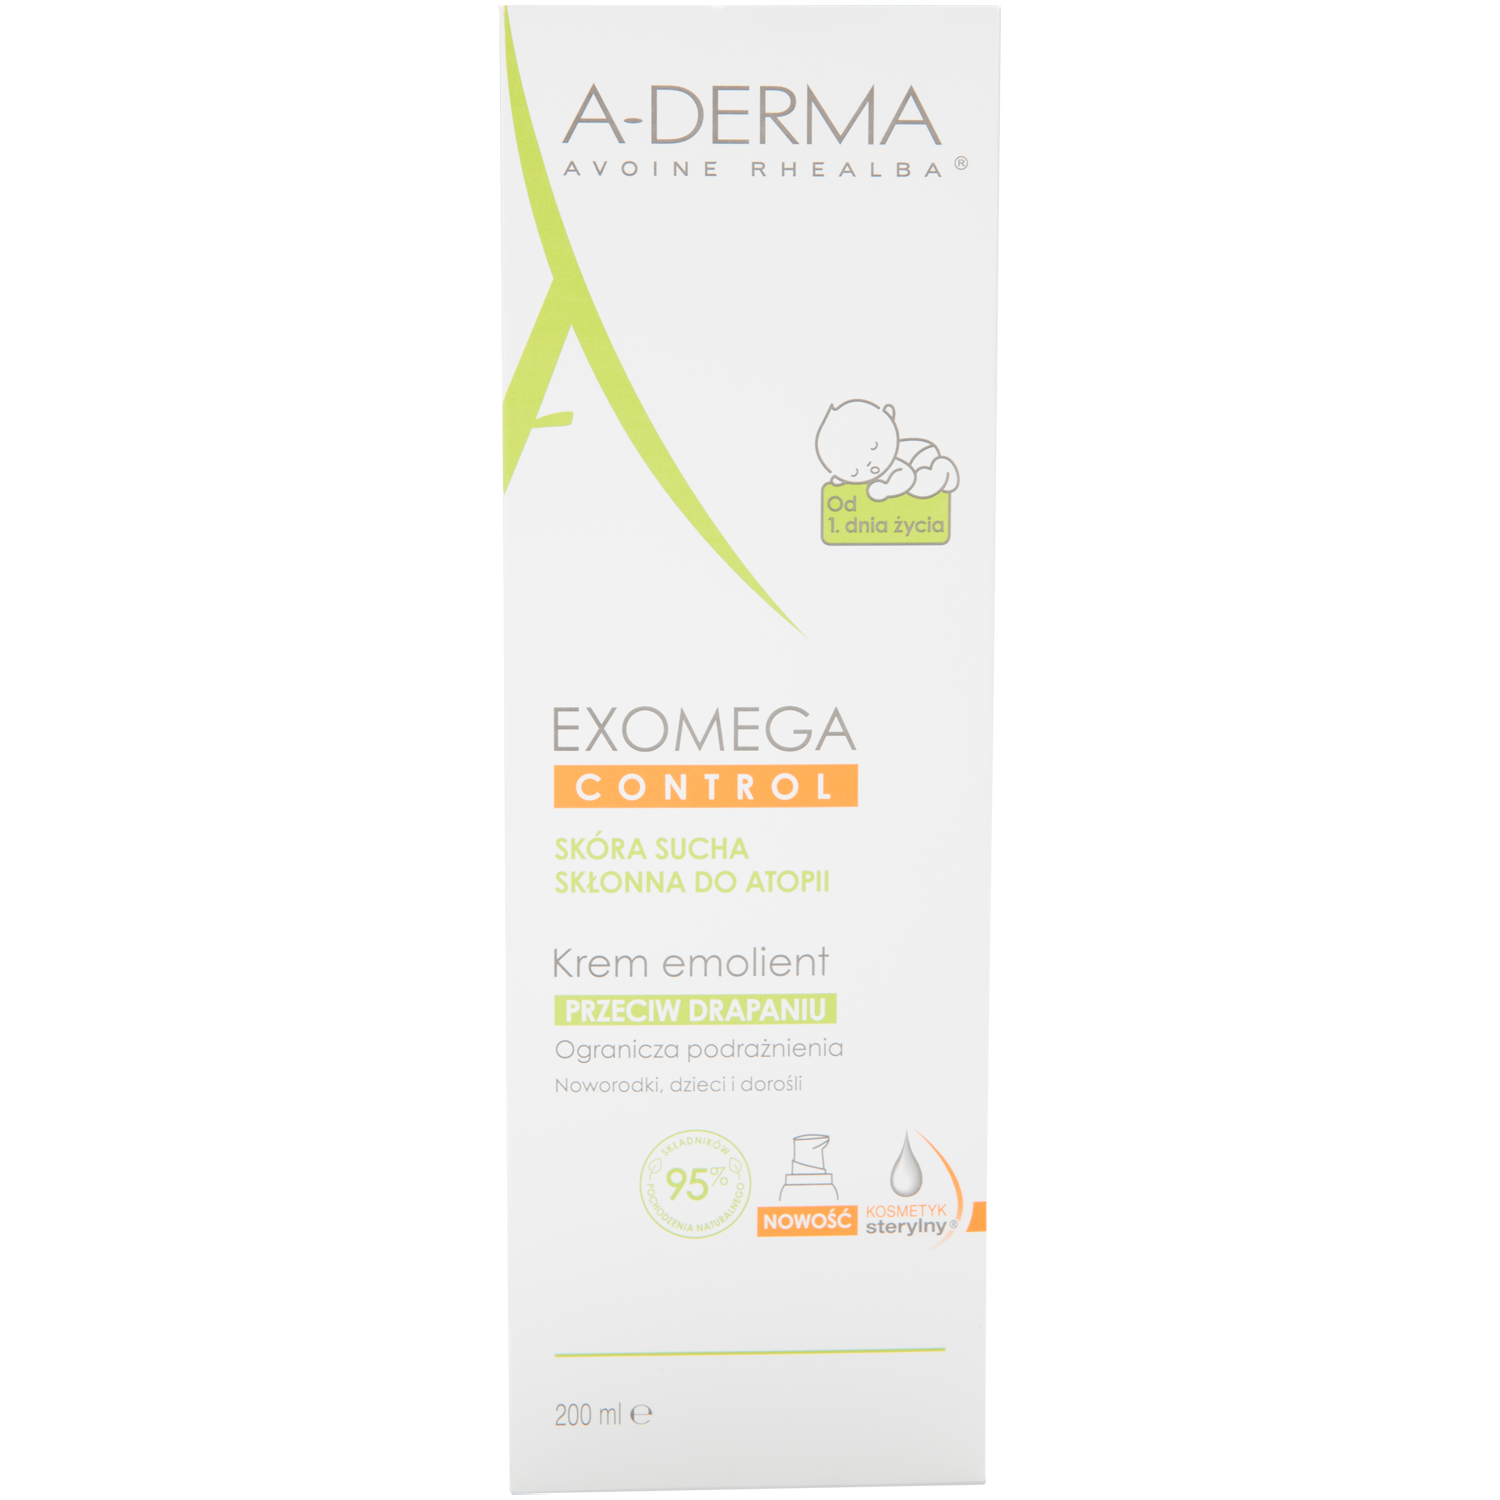 A-Derma Exomega Control смягчающий лосьон. A-Derma, Essential увлажняющий гель для очищения тела, 200 мл. A Derma Exomega. A derma control